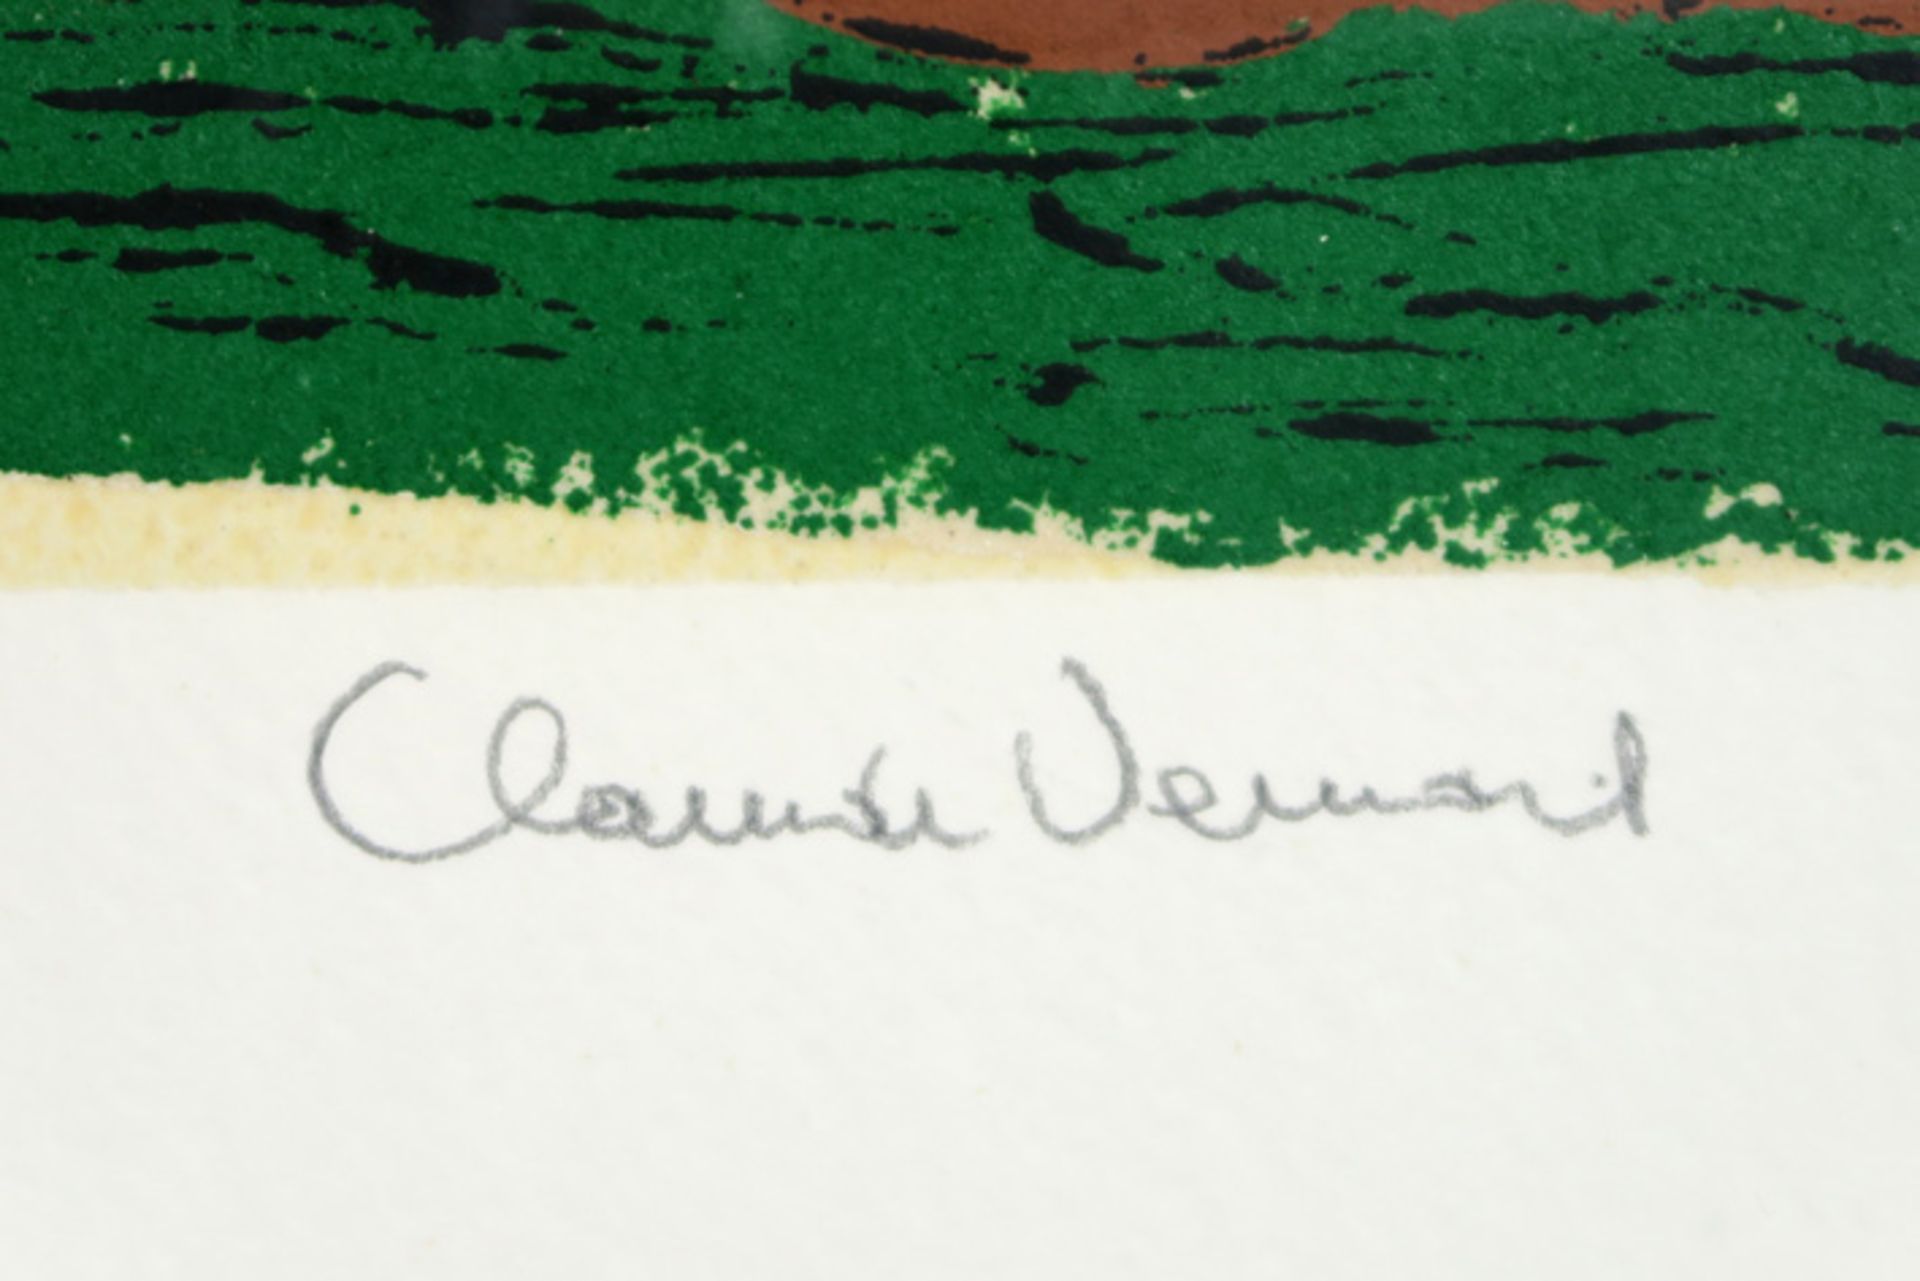 20th Cent. carborundum print - signed Claude Venard || VENARD CLAUDE (1913 - 1999) carborundum print - Image 2 of 3